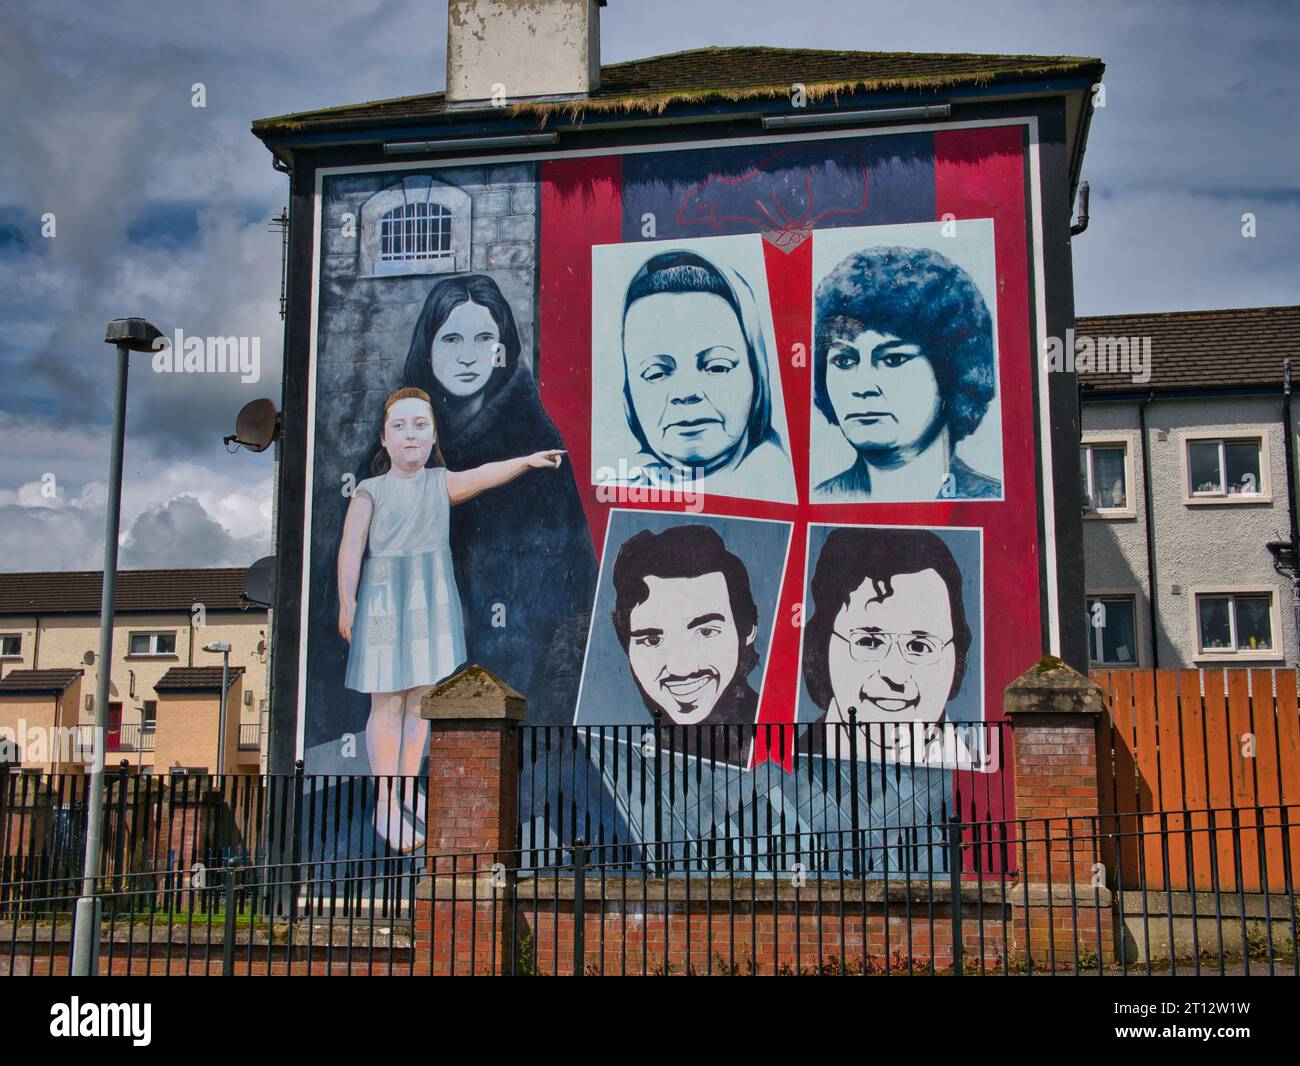 La fresque des mères et des sœurs dans le quartier Bogside de Derry - Londonderry en Irlande du Nord, Royaume-Uni. Banque D'Images